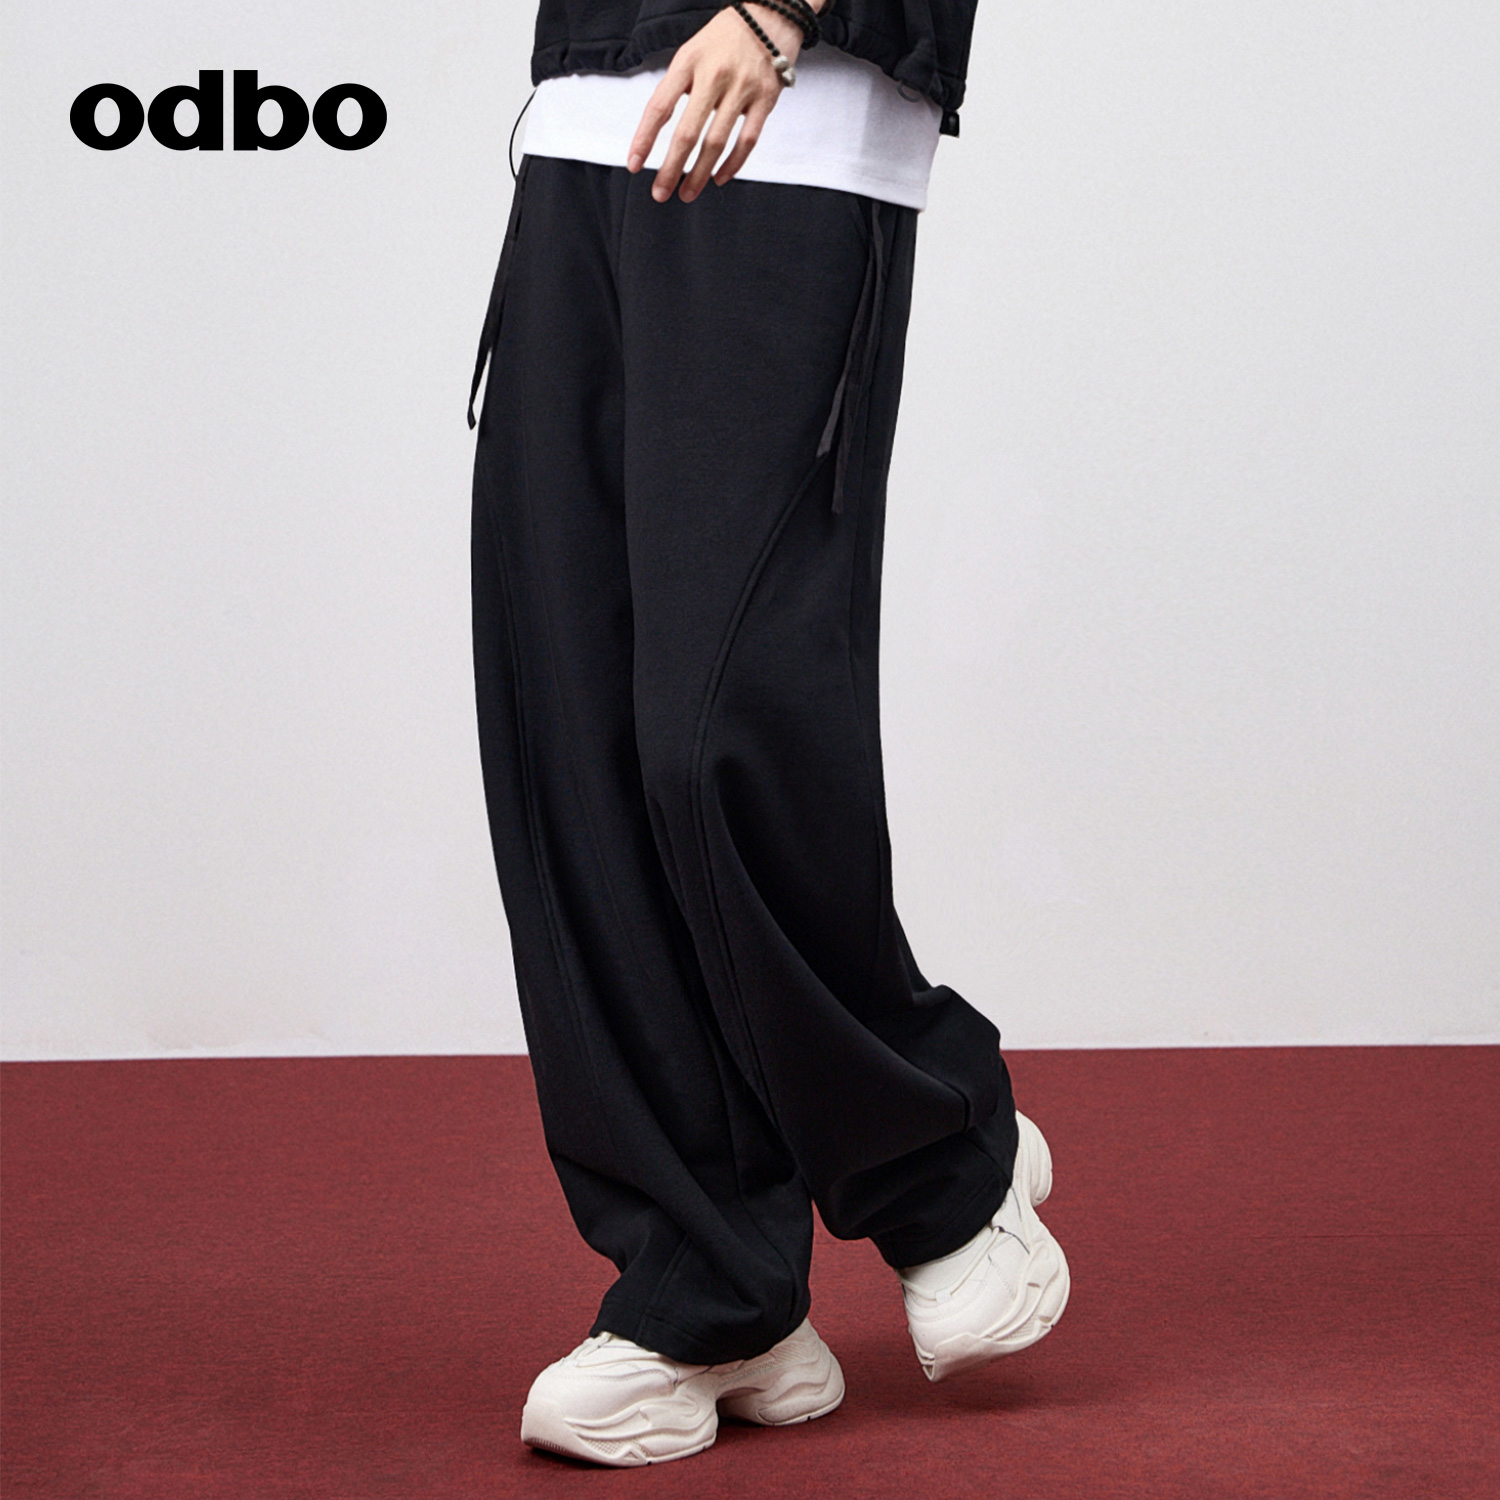 女春季 odbo 新款 欧迪比欧时尚 直筒裤 气质抽绳设计黑色针织休闲裤